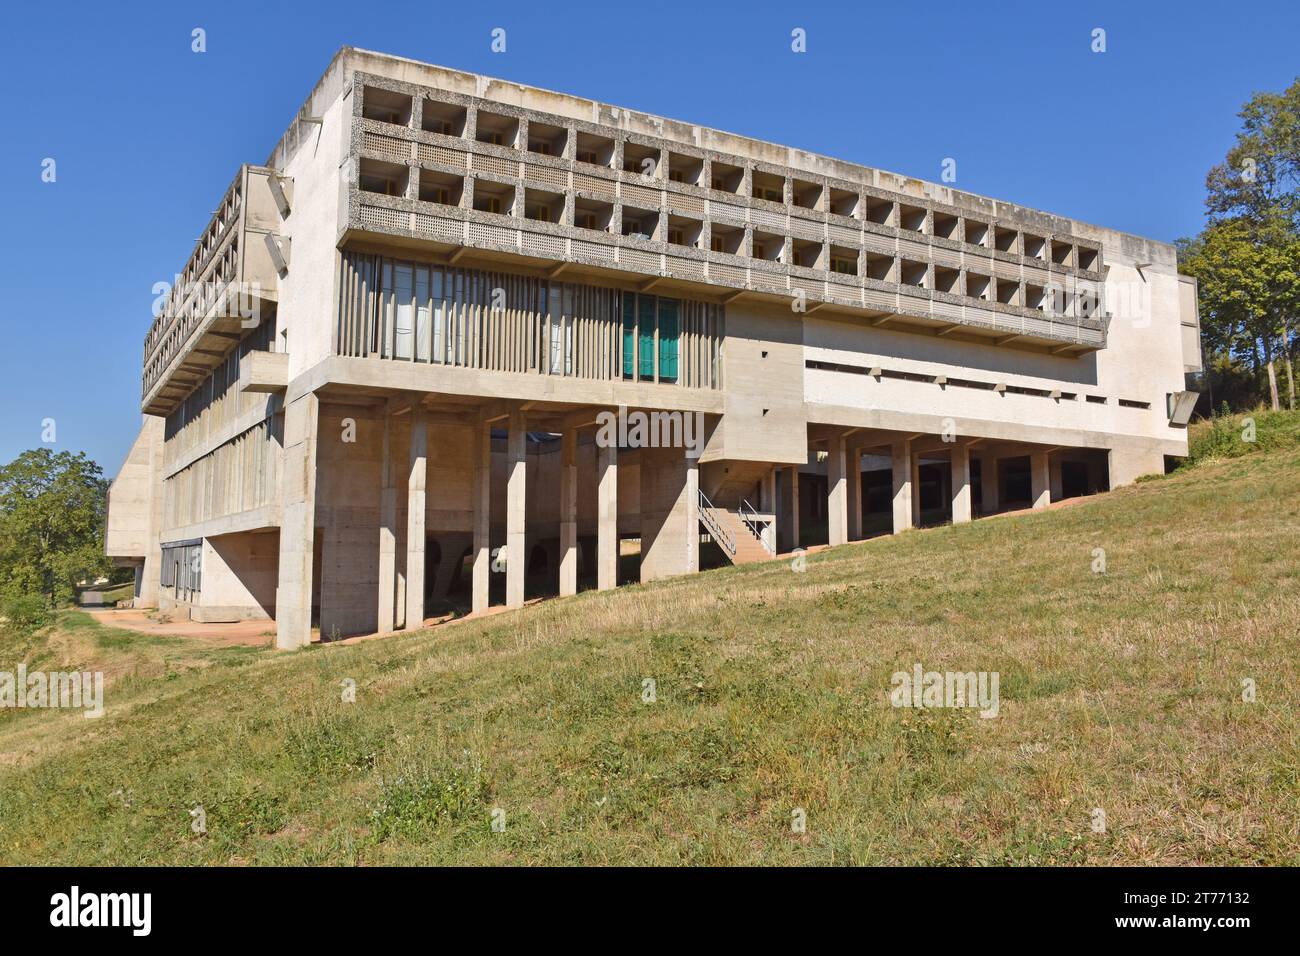 Sainte Marie de La Tourette, a Dominican Order priory on a hillside near Lyon France, architect Le Corbusier, his last building. Built 1953-61 Stock Photo